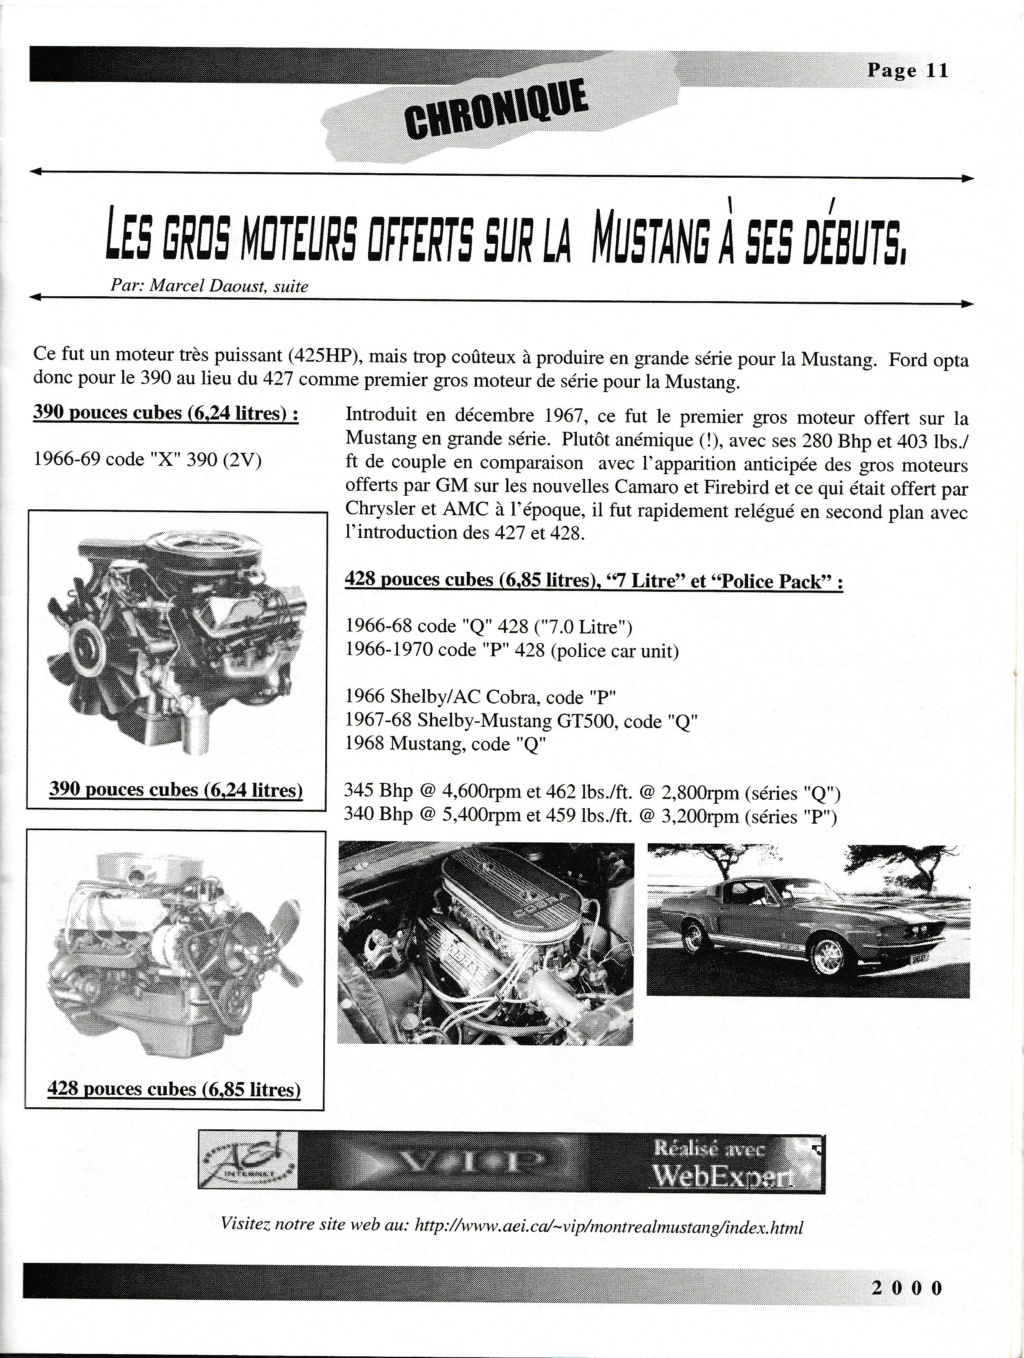 Montréal Mustang dans le temps! 1981 à aujourd'hui (Histoire en photos) - Page 9 Img_2520